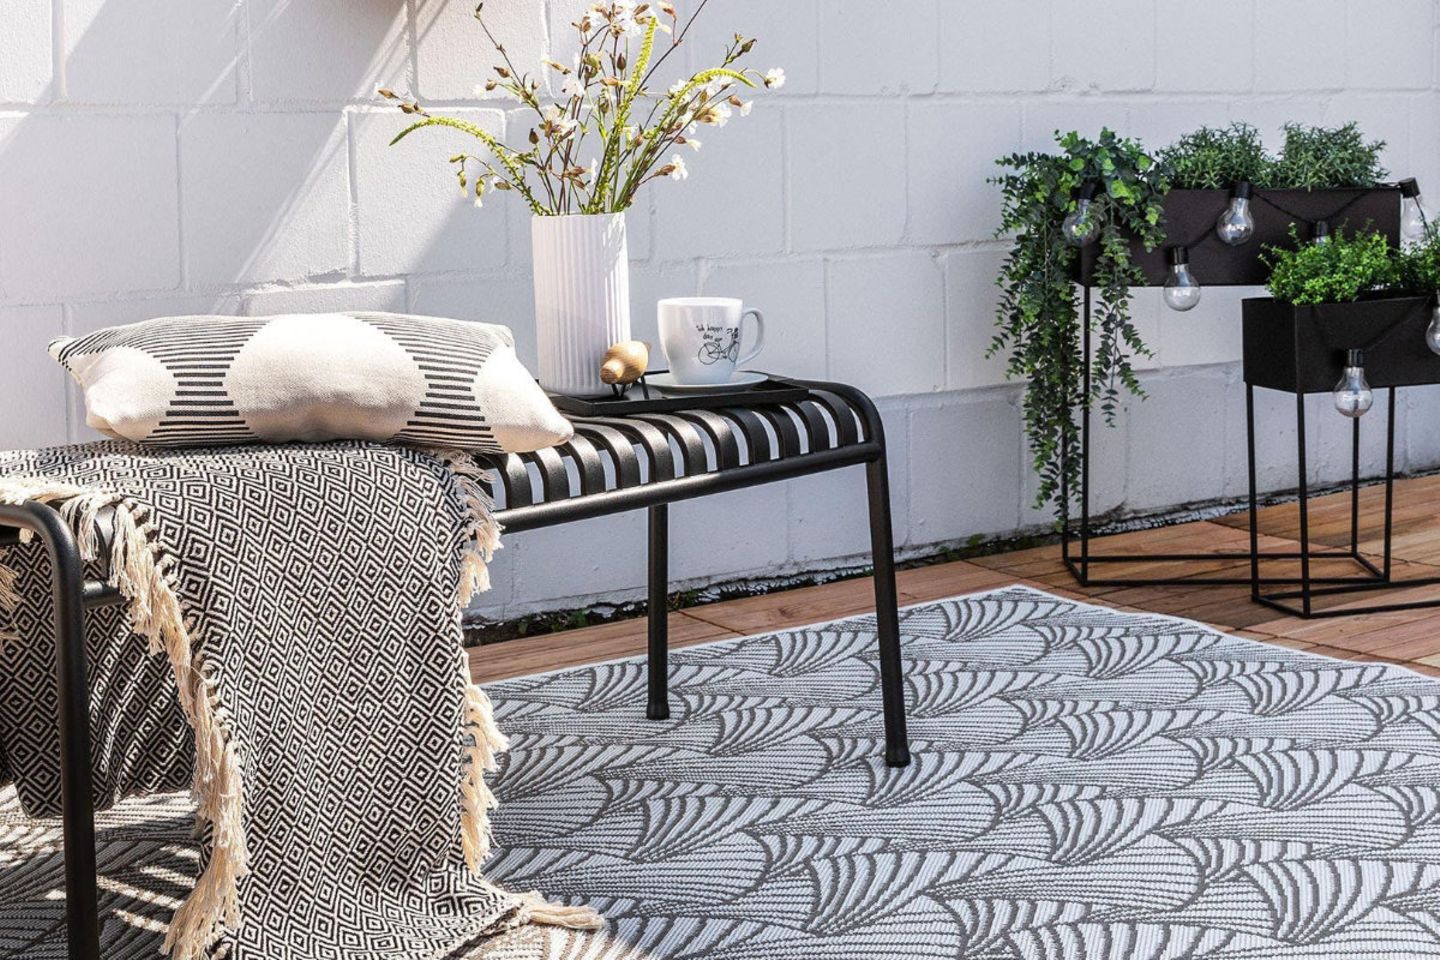 Grauer Outdoor-Teppich auf Holzterrasse mit schwarzer Metallbank und Textilien